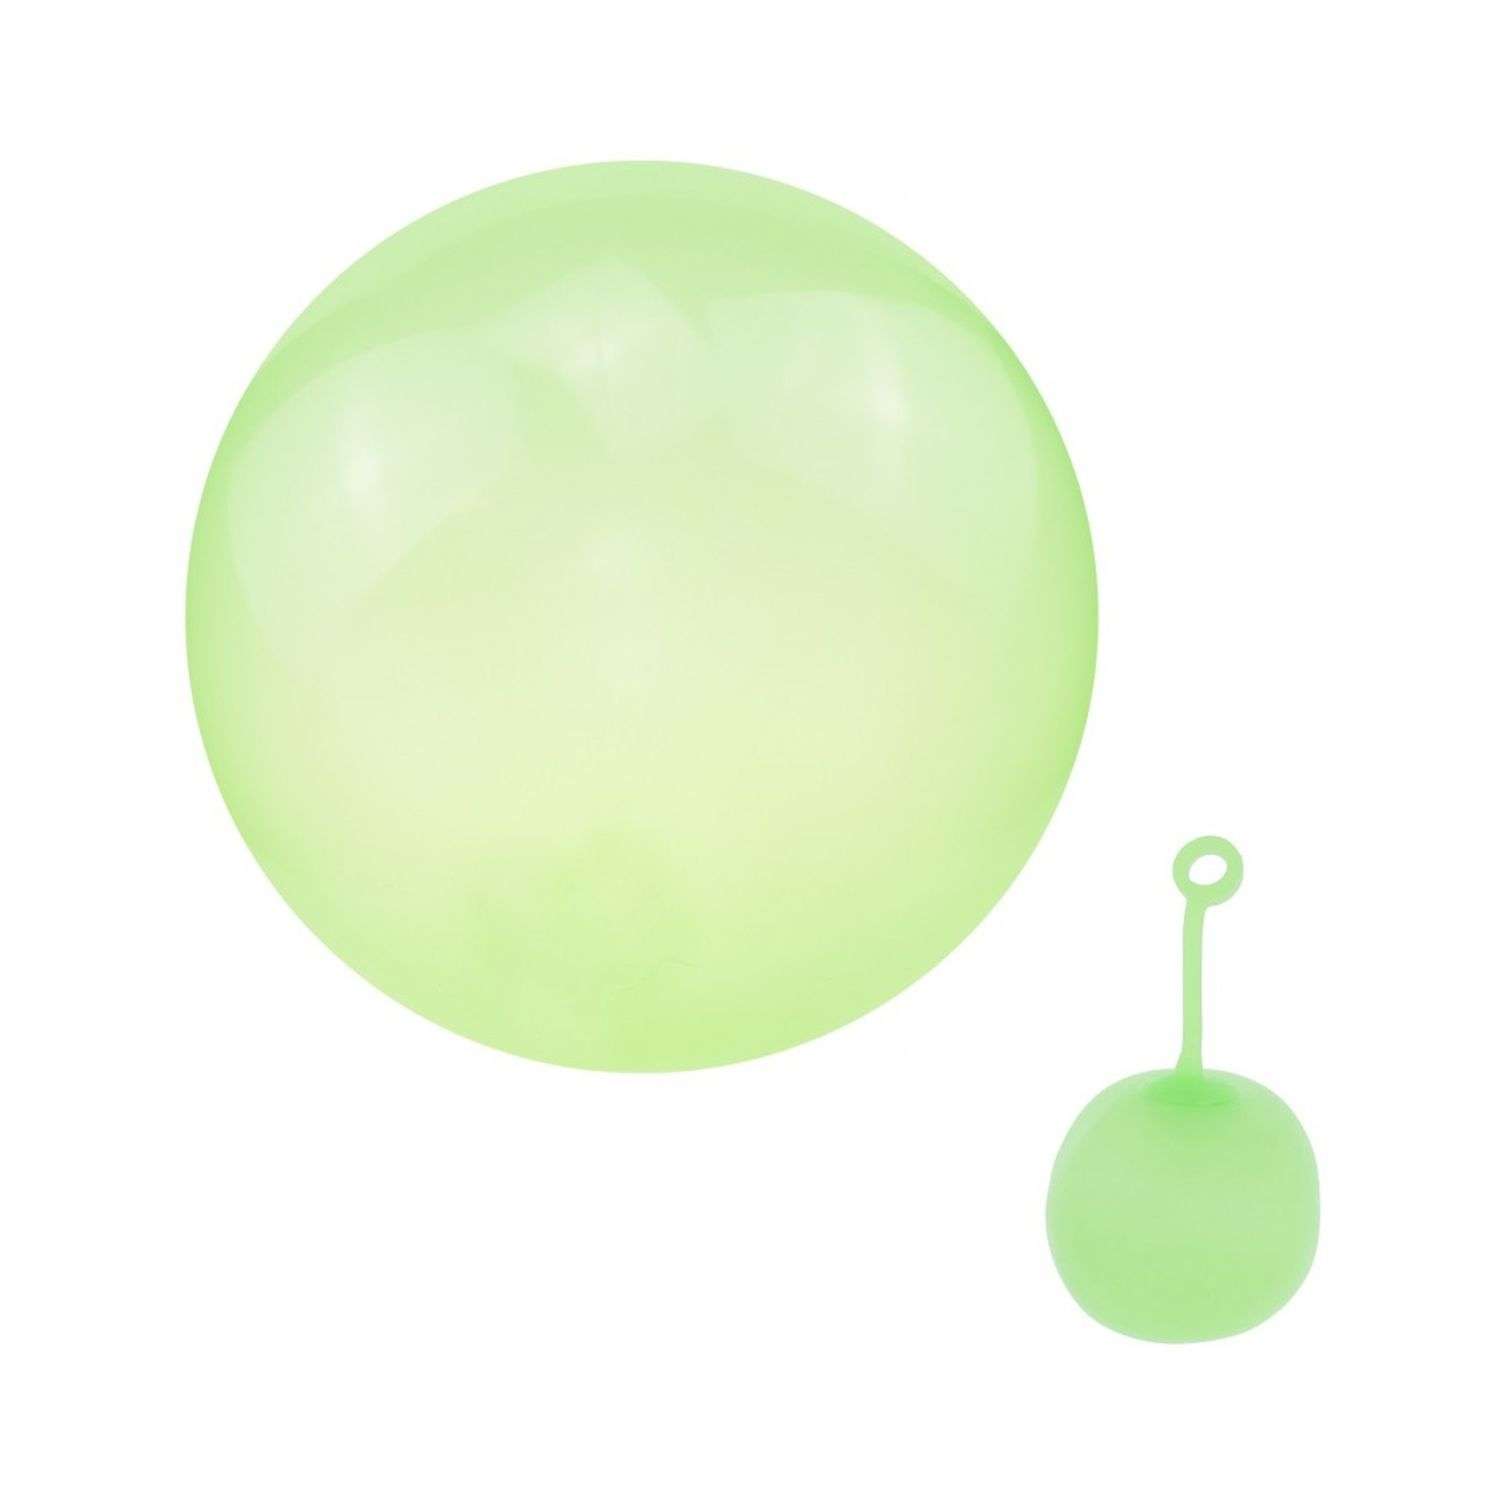 Суперпрочный надувной шар Seichi 60 см зеленый - фото 2